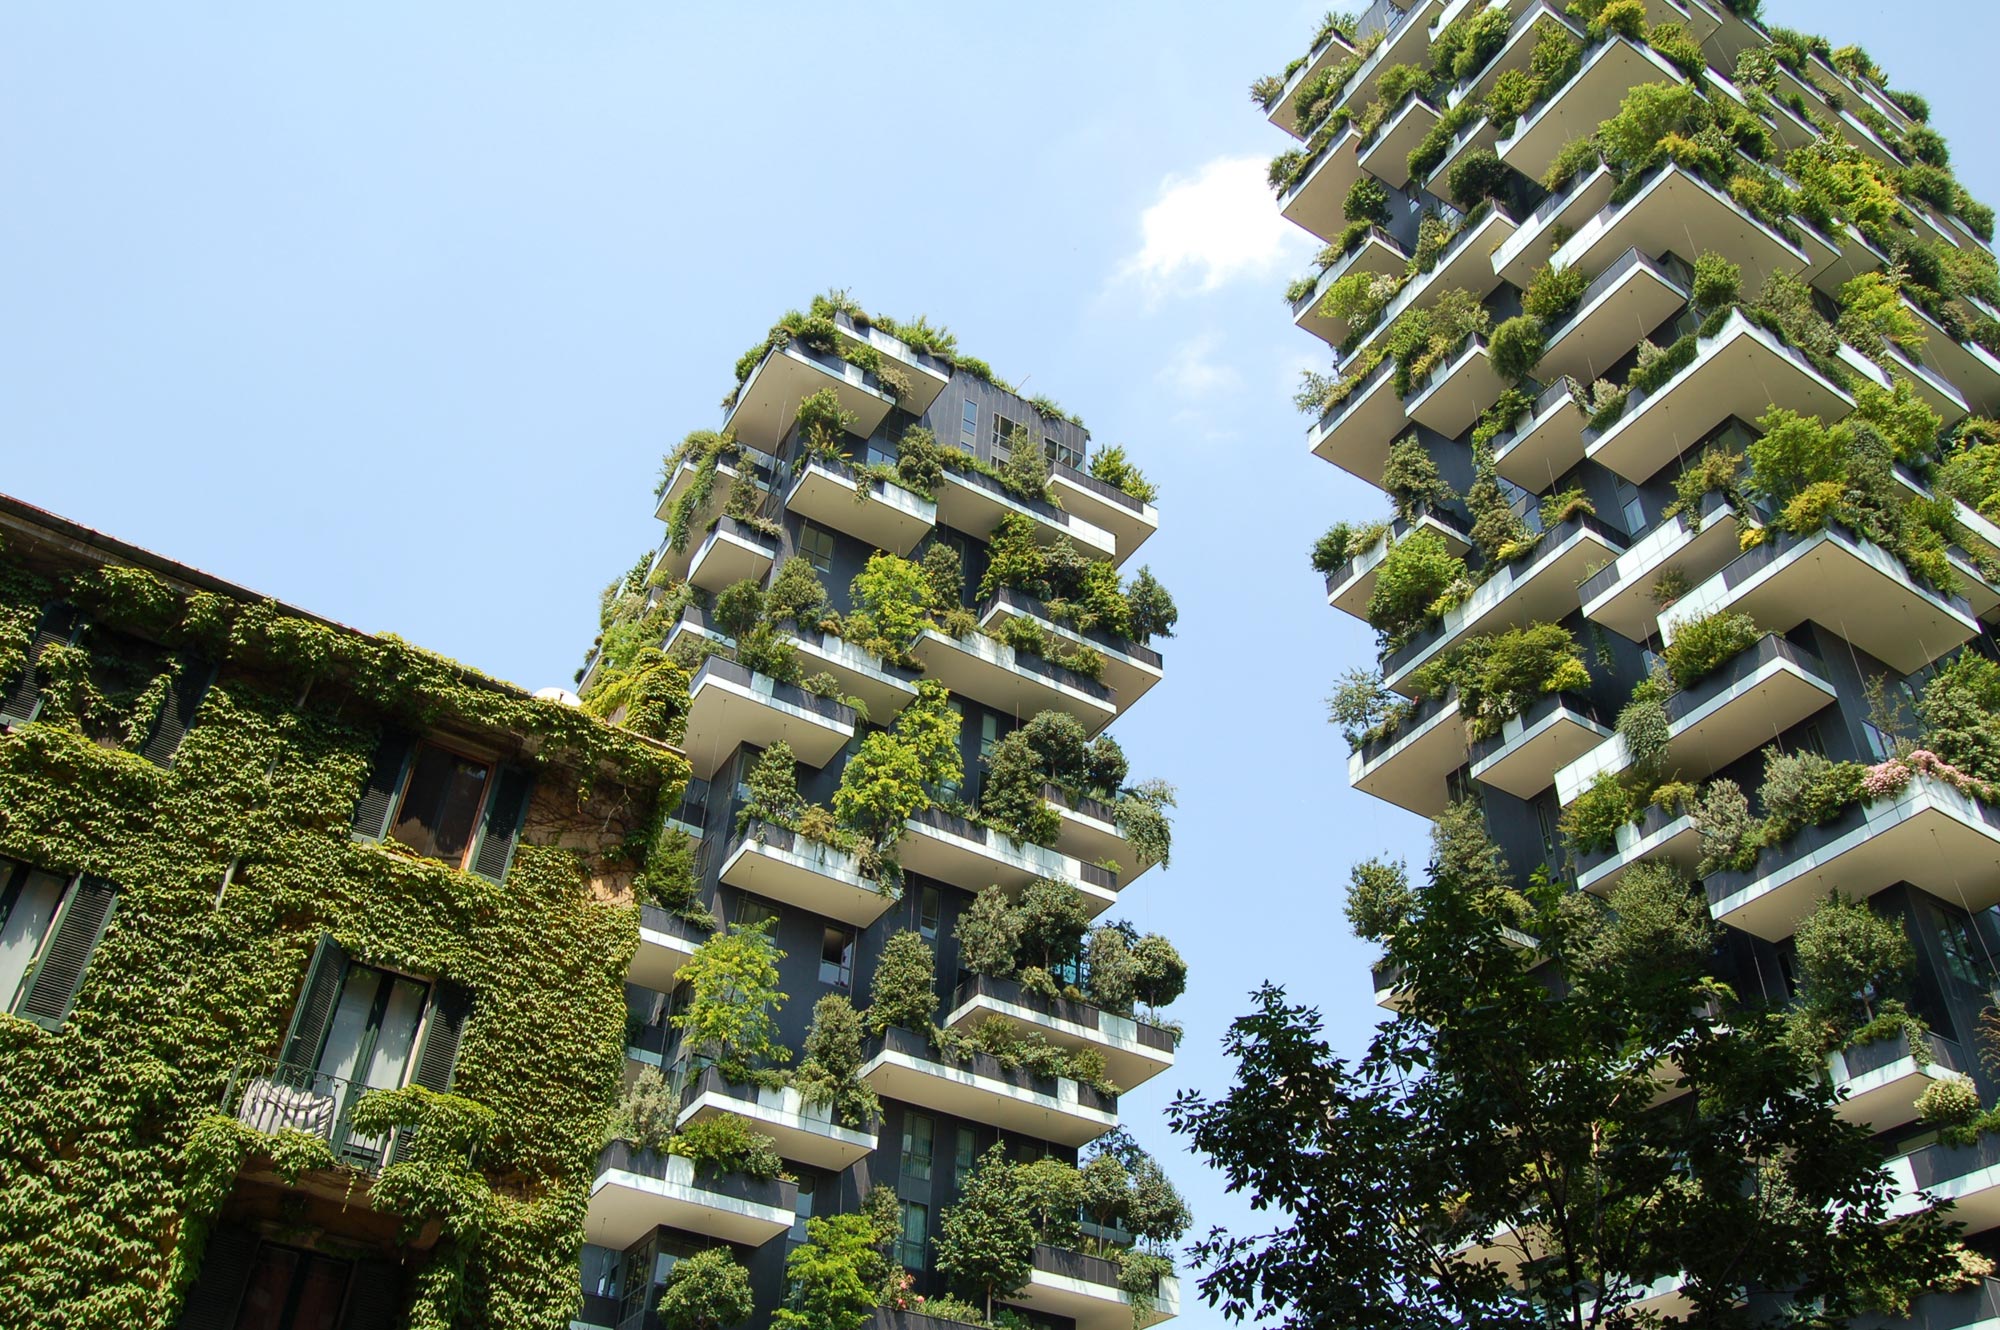 Arquitectura sostenible